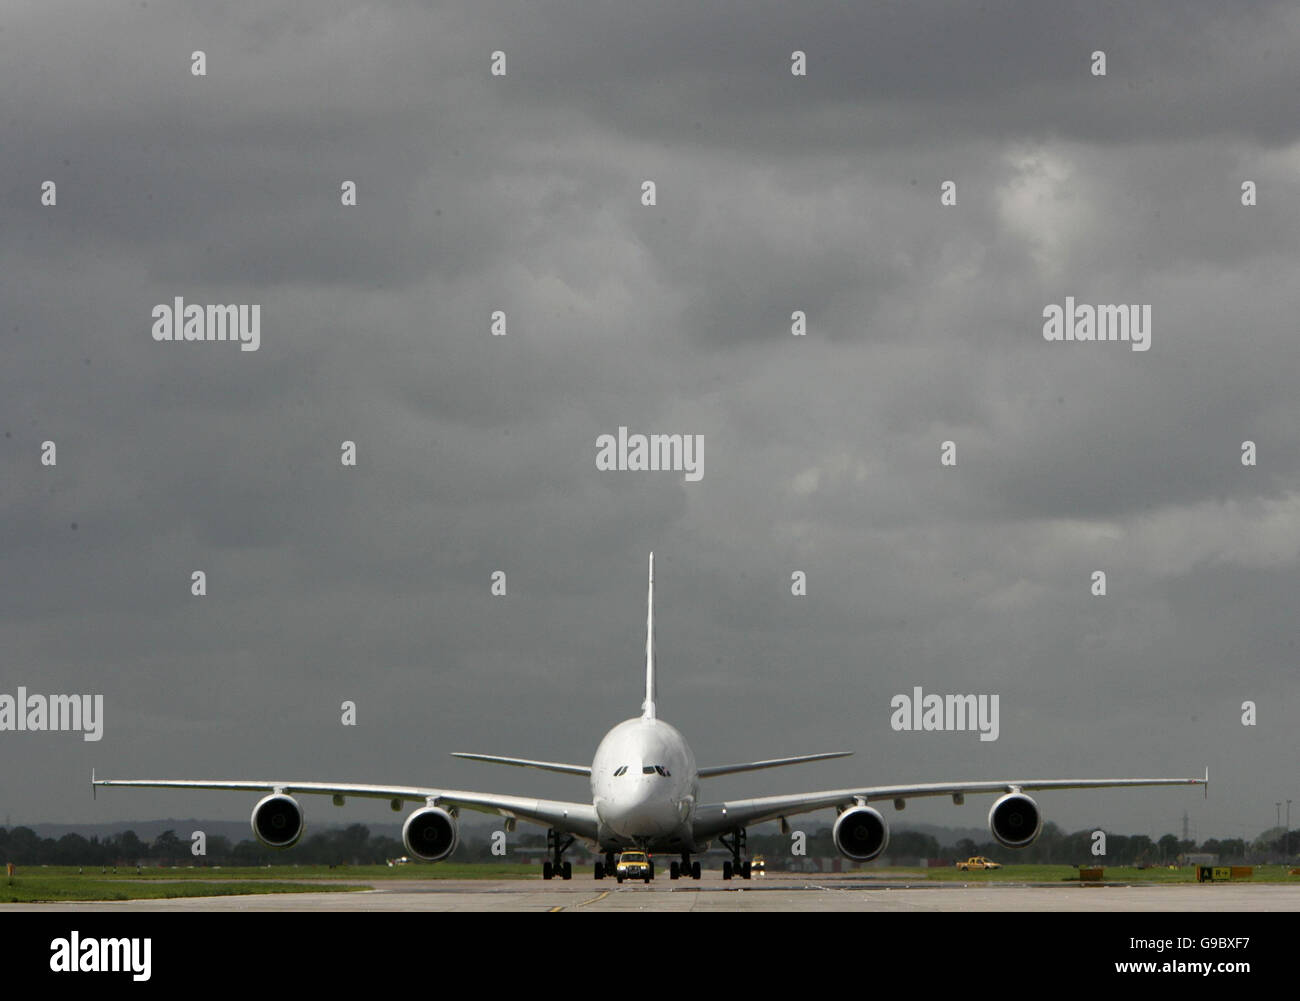 El avión de pasajeros más grande del mundo, el Airbus A380 gigante de 555 plazas, después de aterrizar en el aeropuerto de Heathrow en Londres. Foto de stock